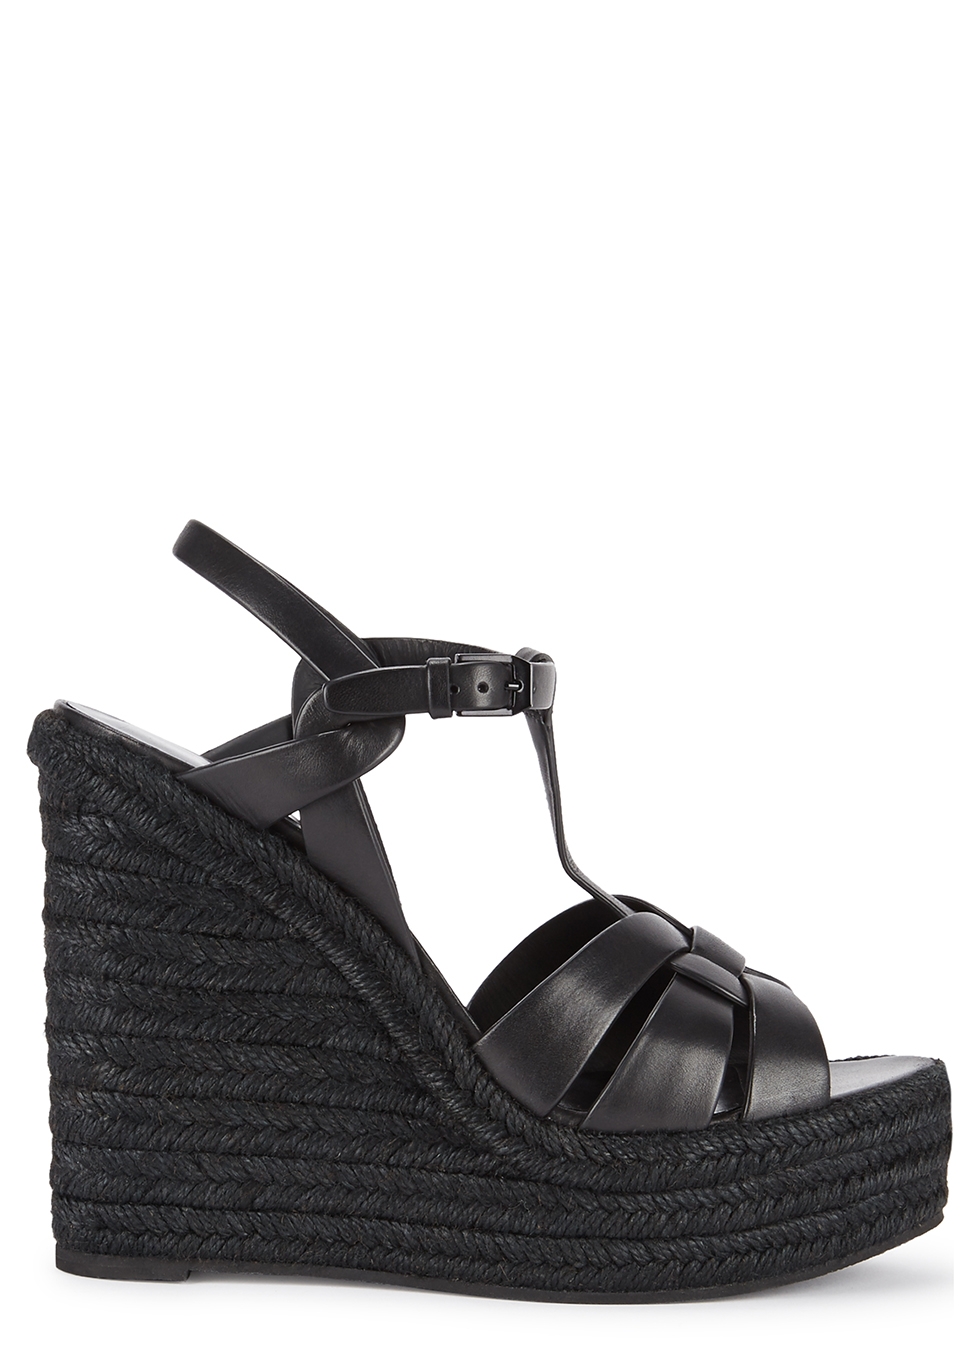 black leather wedge heels